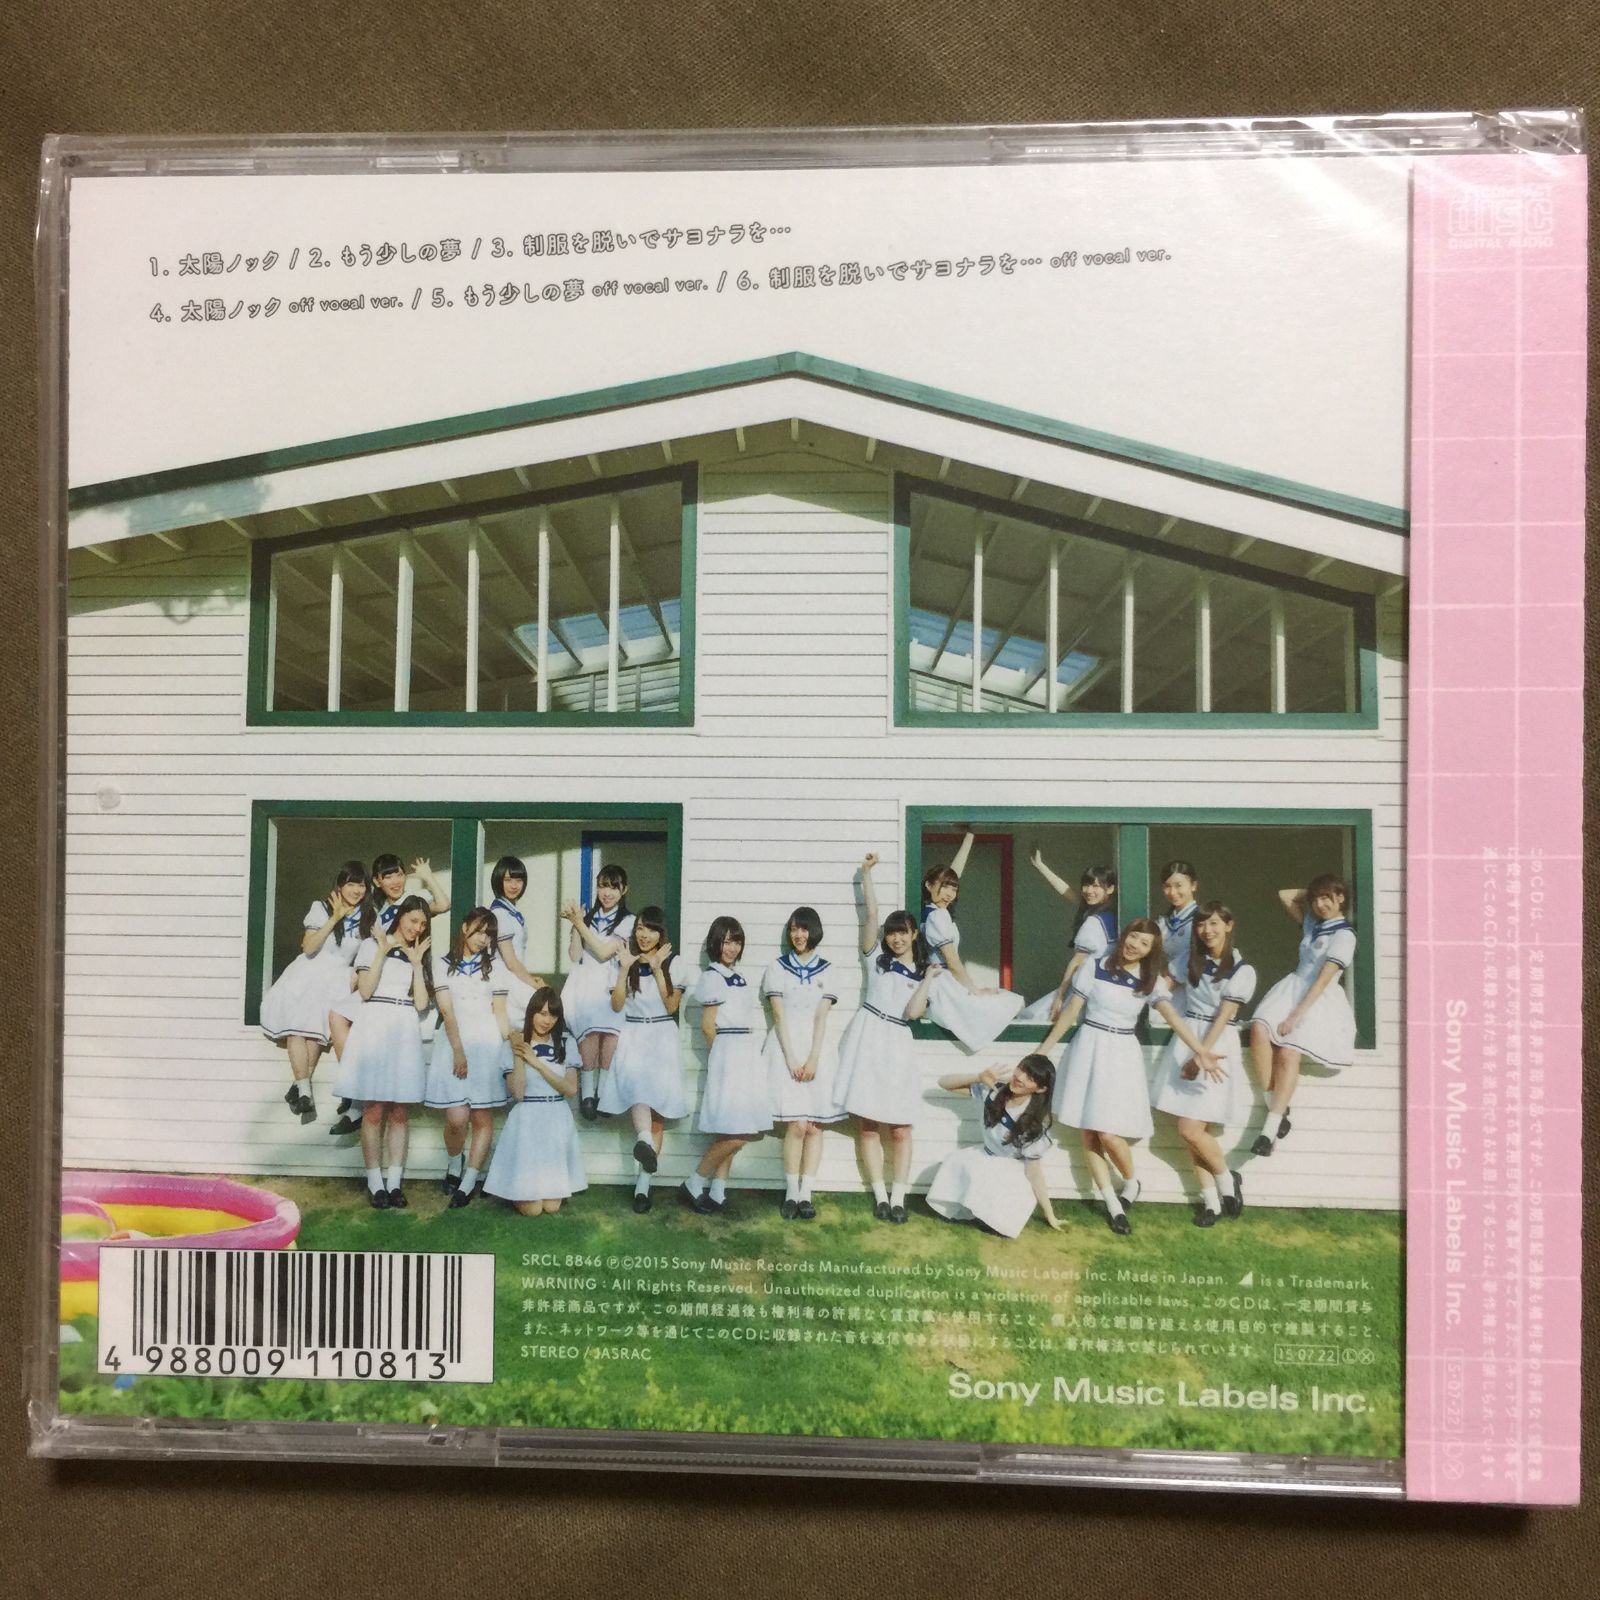 即購入OK 即日発送 送料無料 乃木坂46 太陽ノック 新品 未開封 CD 